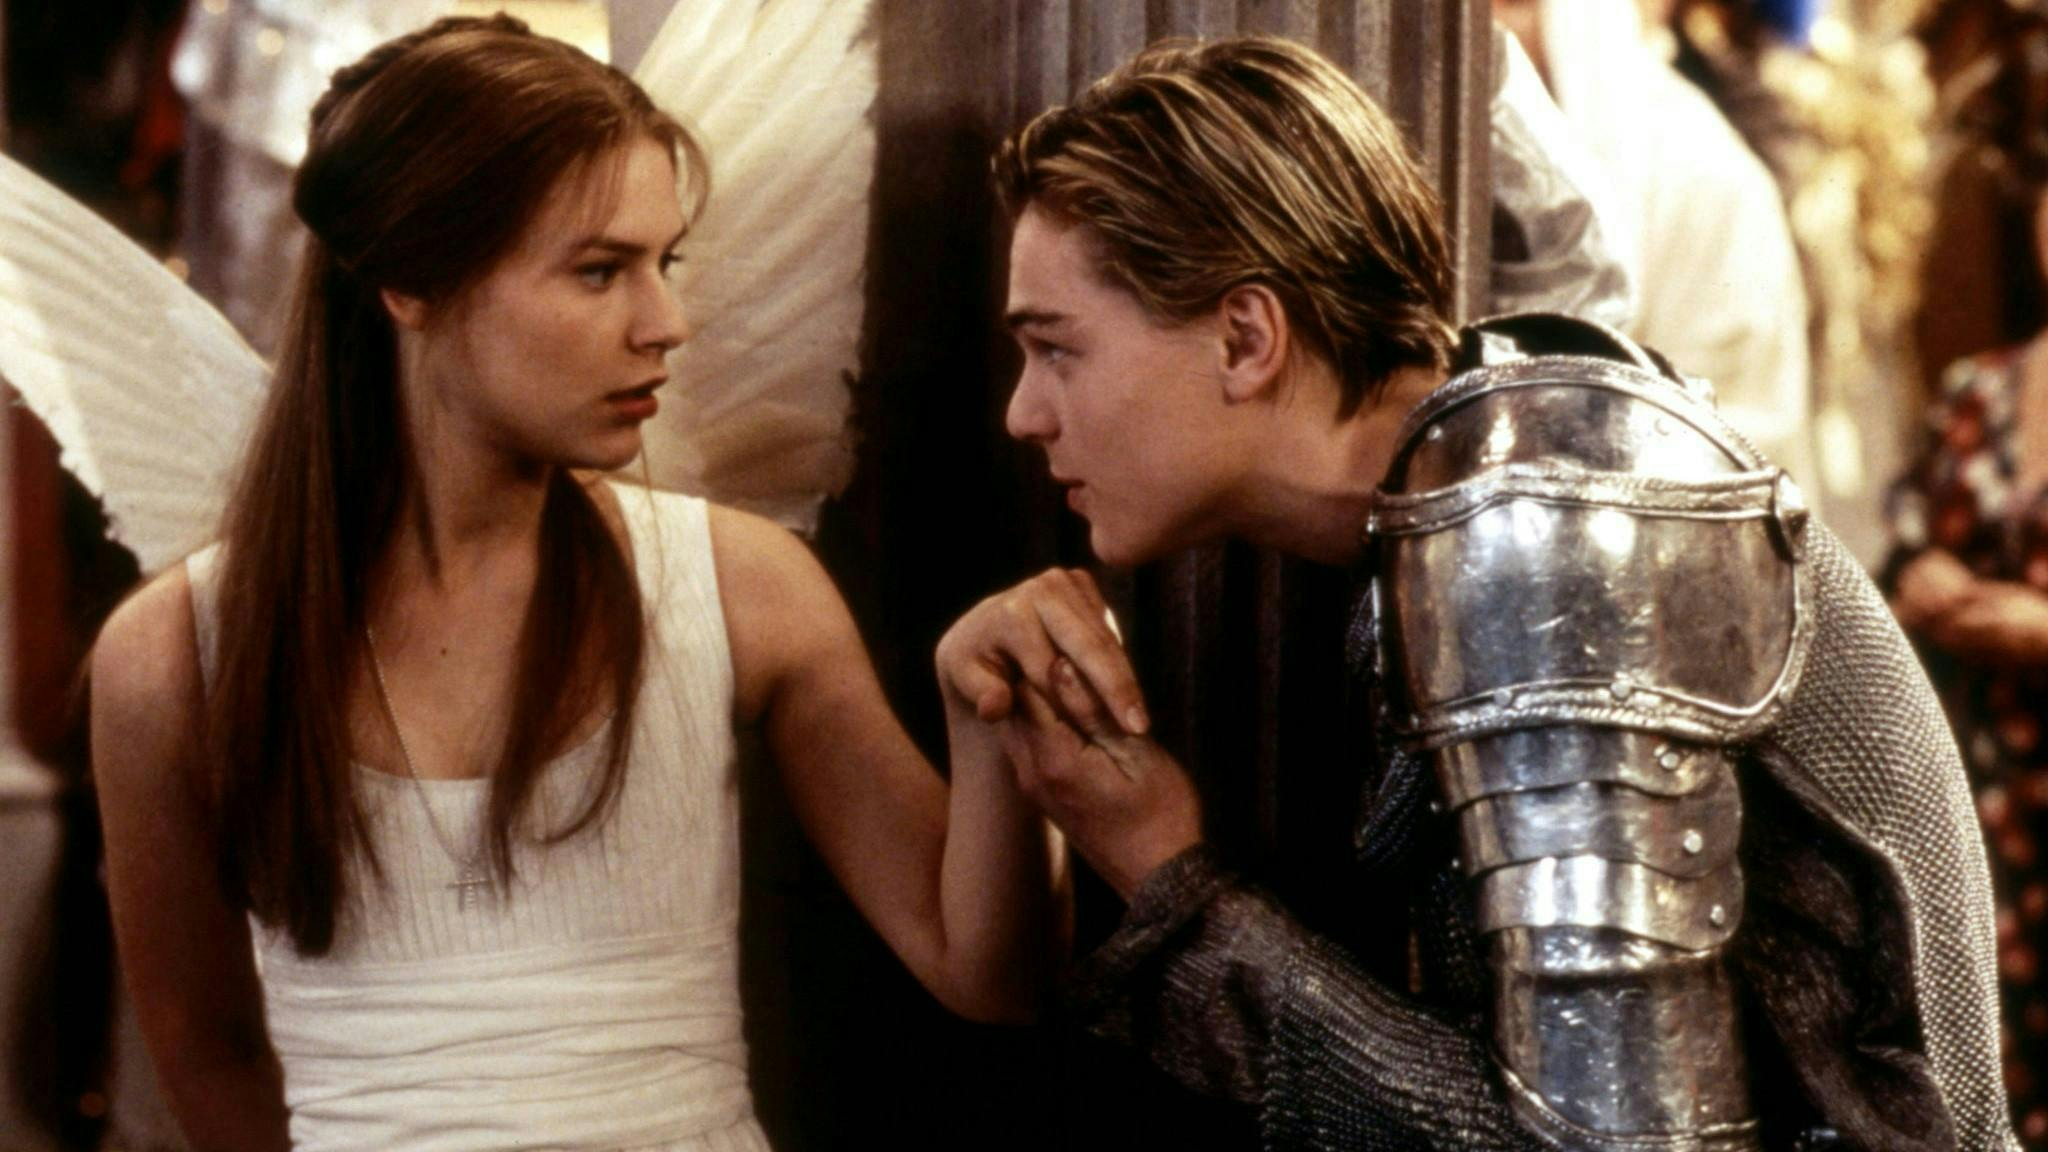 Claire Danes et Leonardo DiCaprio dans le film "Roméo + Juliette" (1996).